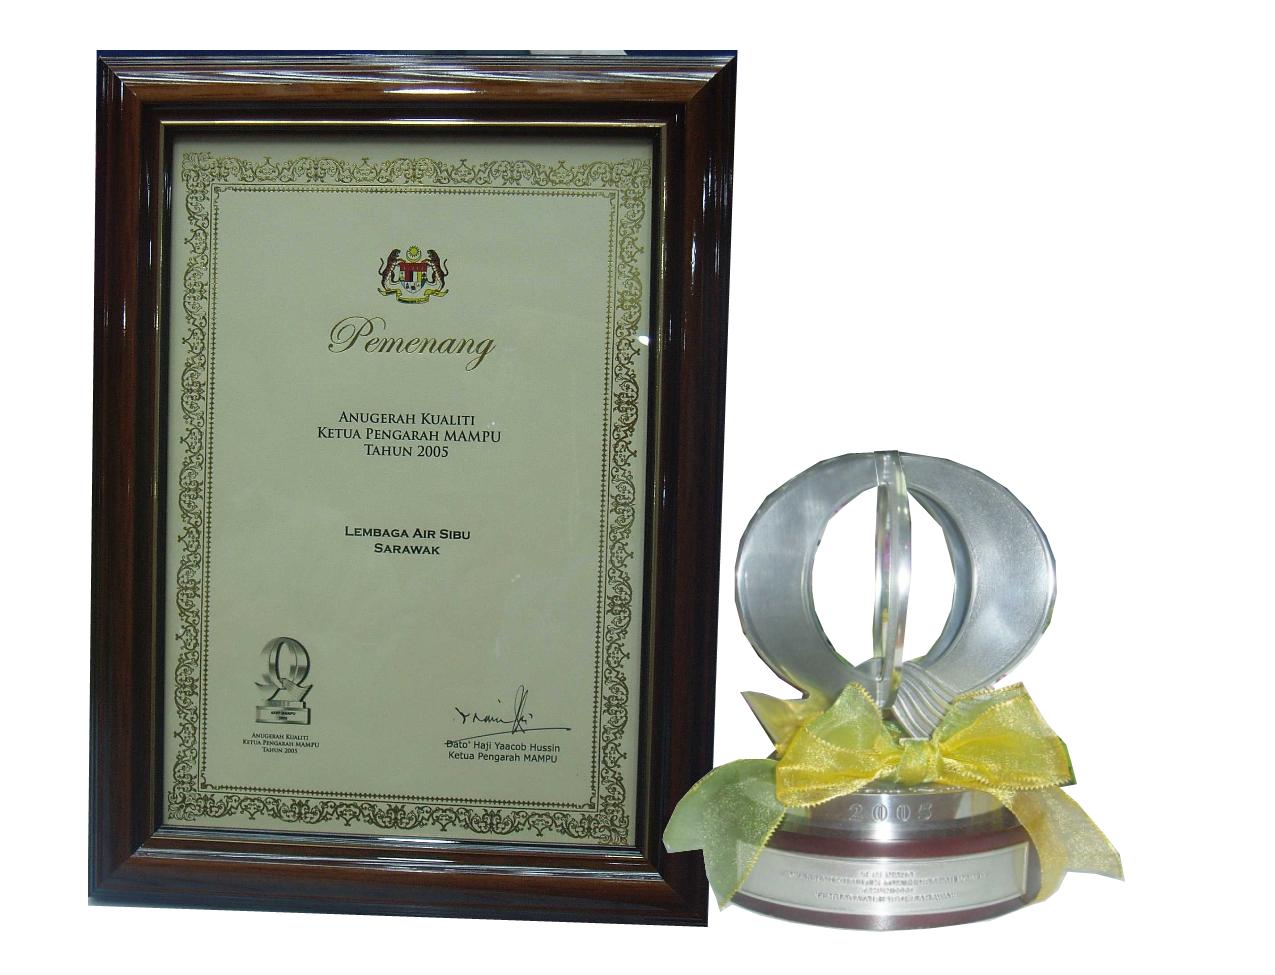 Anugerah Kualiti Ketua Pengarah Mampu 2005